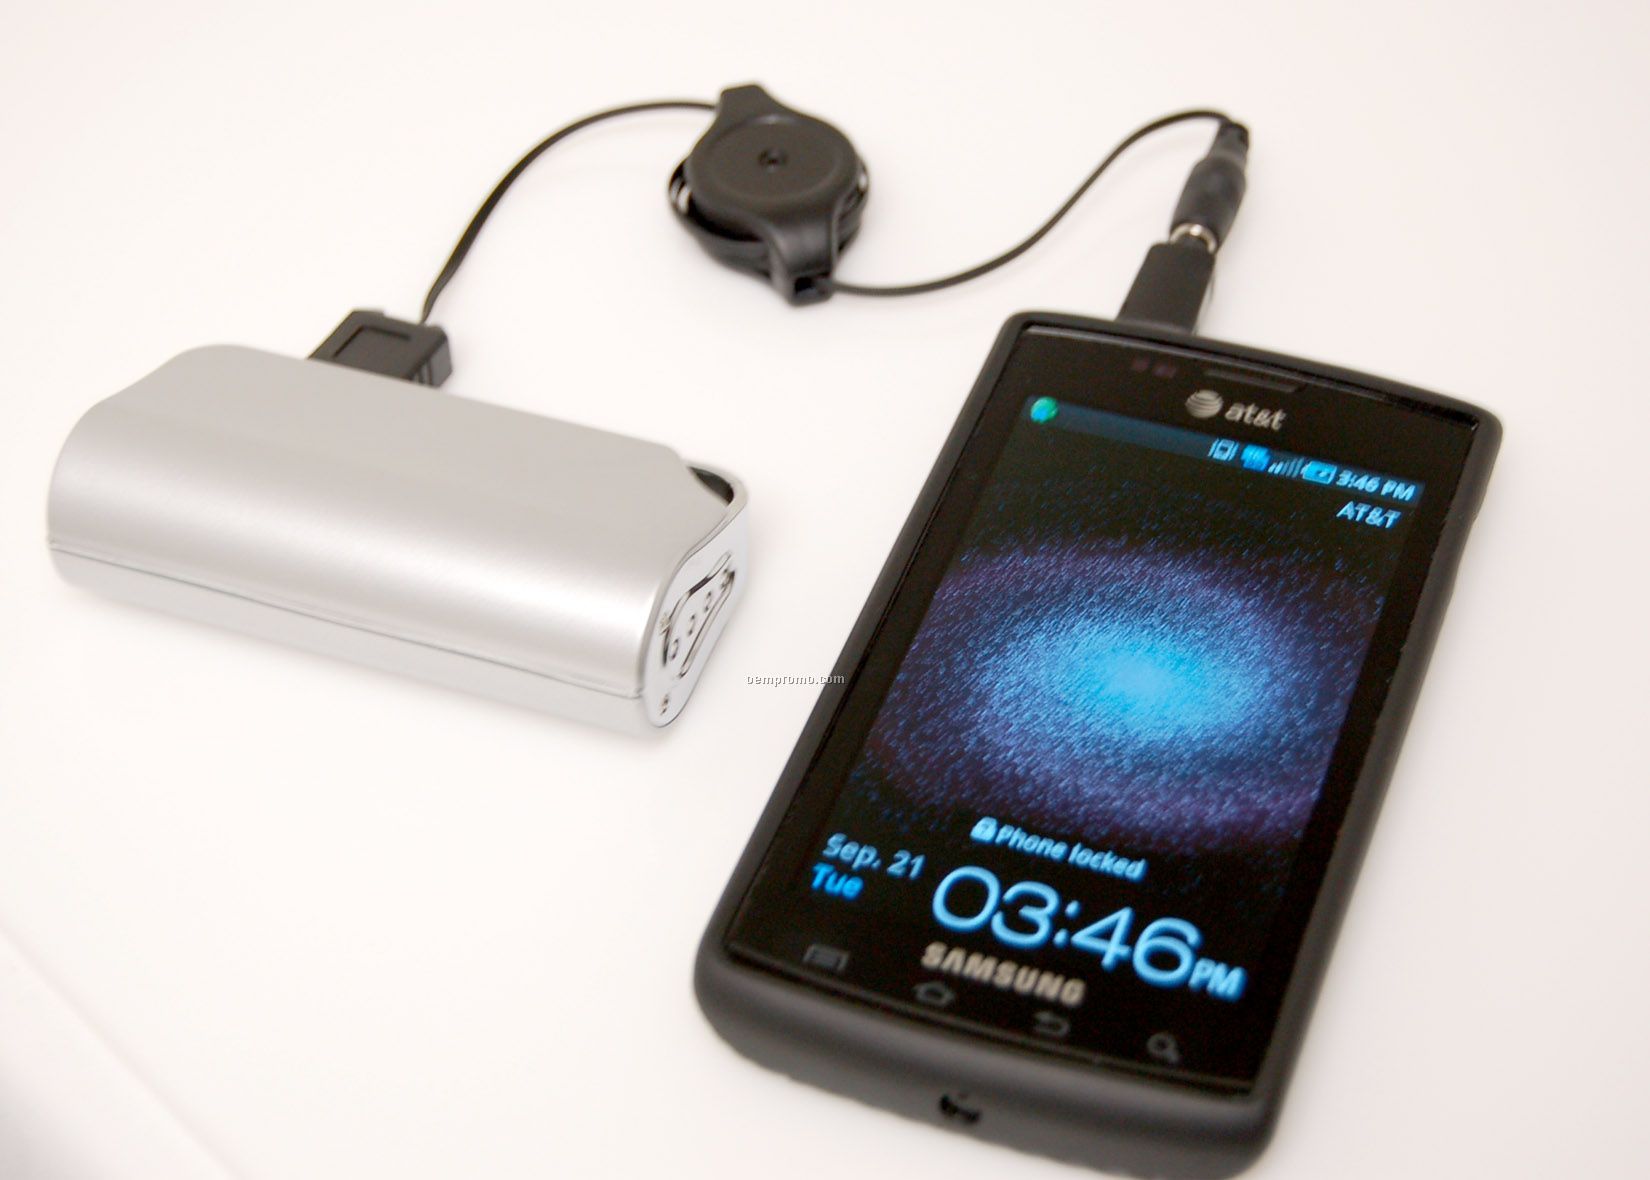 USB Mobile Charger - Universal